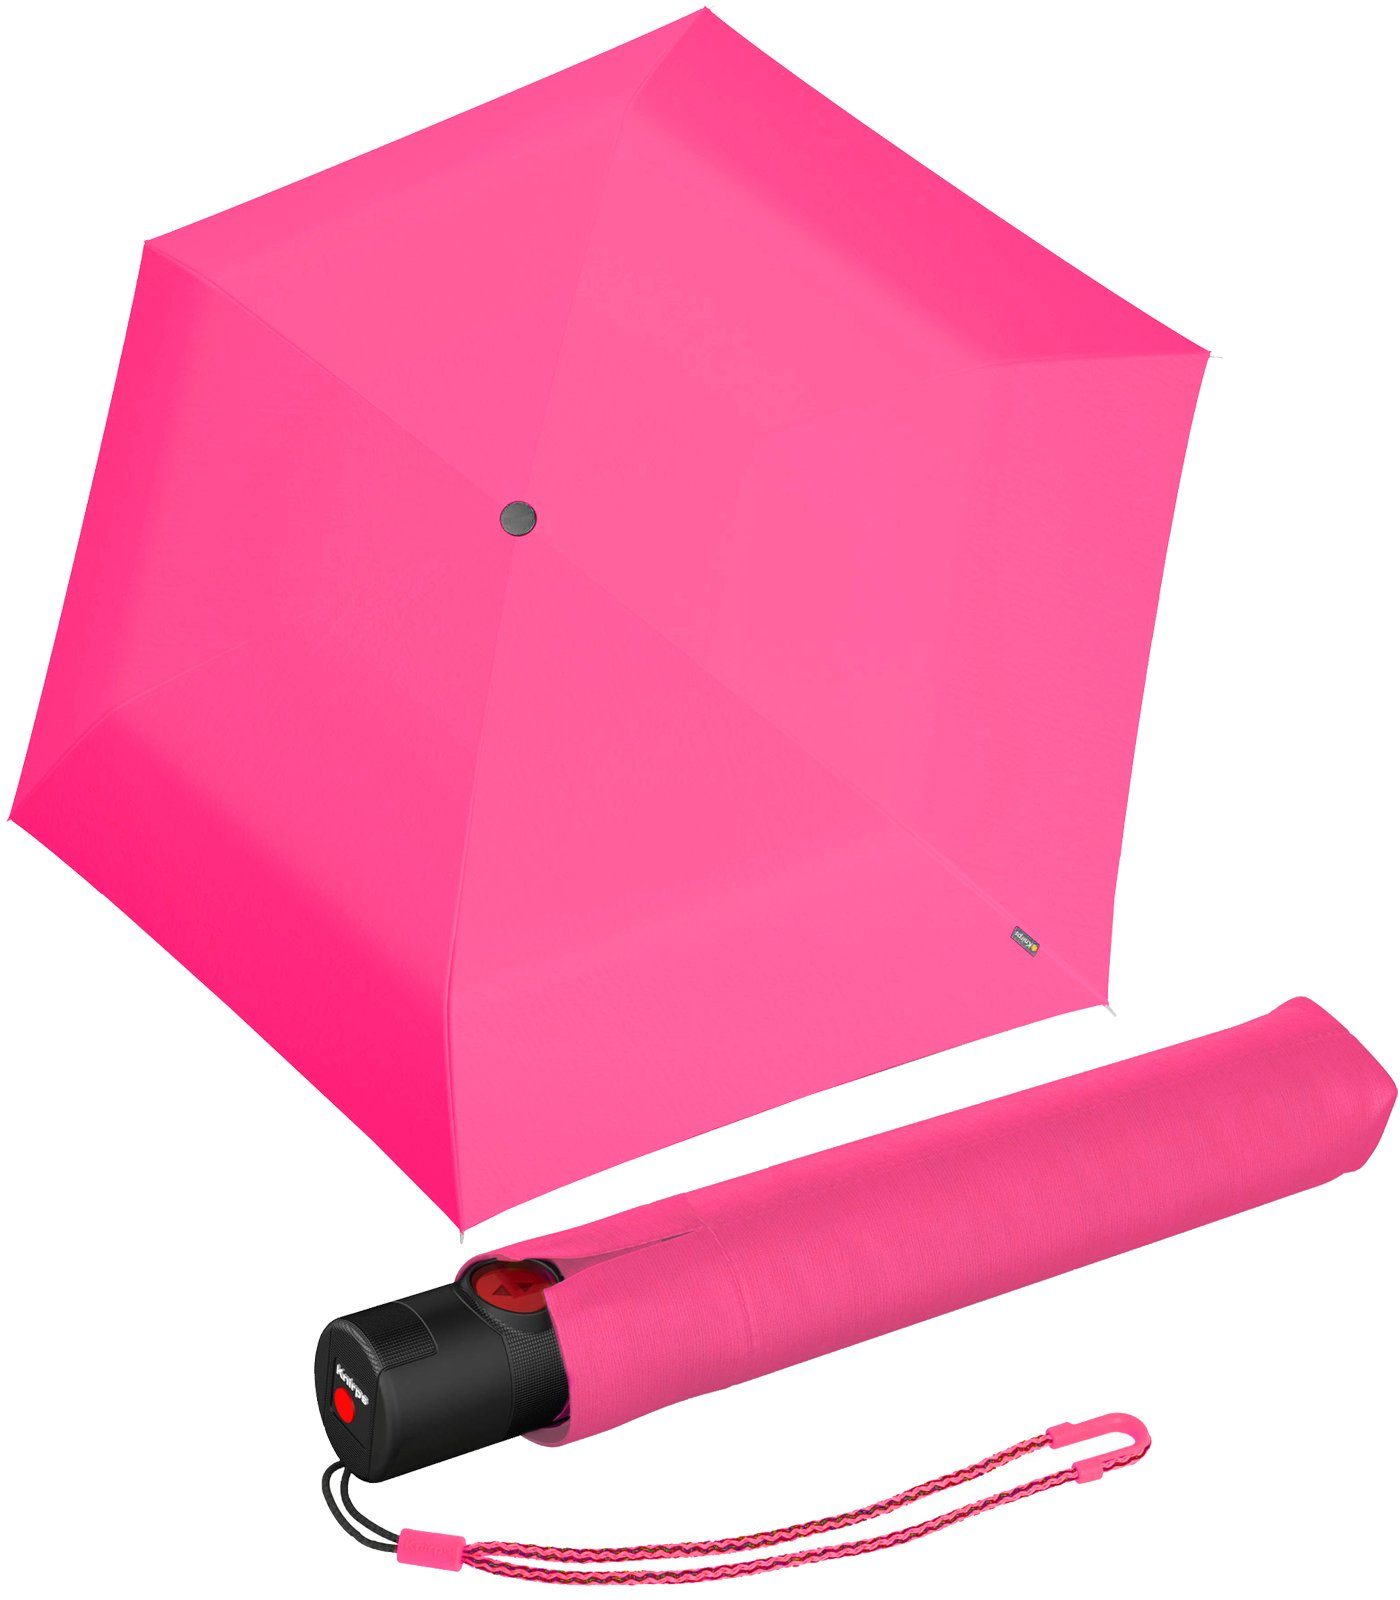 leichteste Duomatic-Funktion Knirps® Auf-Zu-Automatik, mit Schirm schlanker, mit Taschenregenschirm pink leichter der Knirps